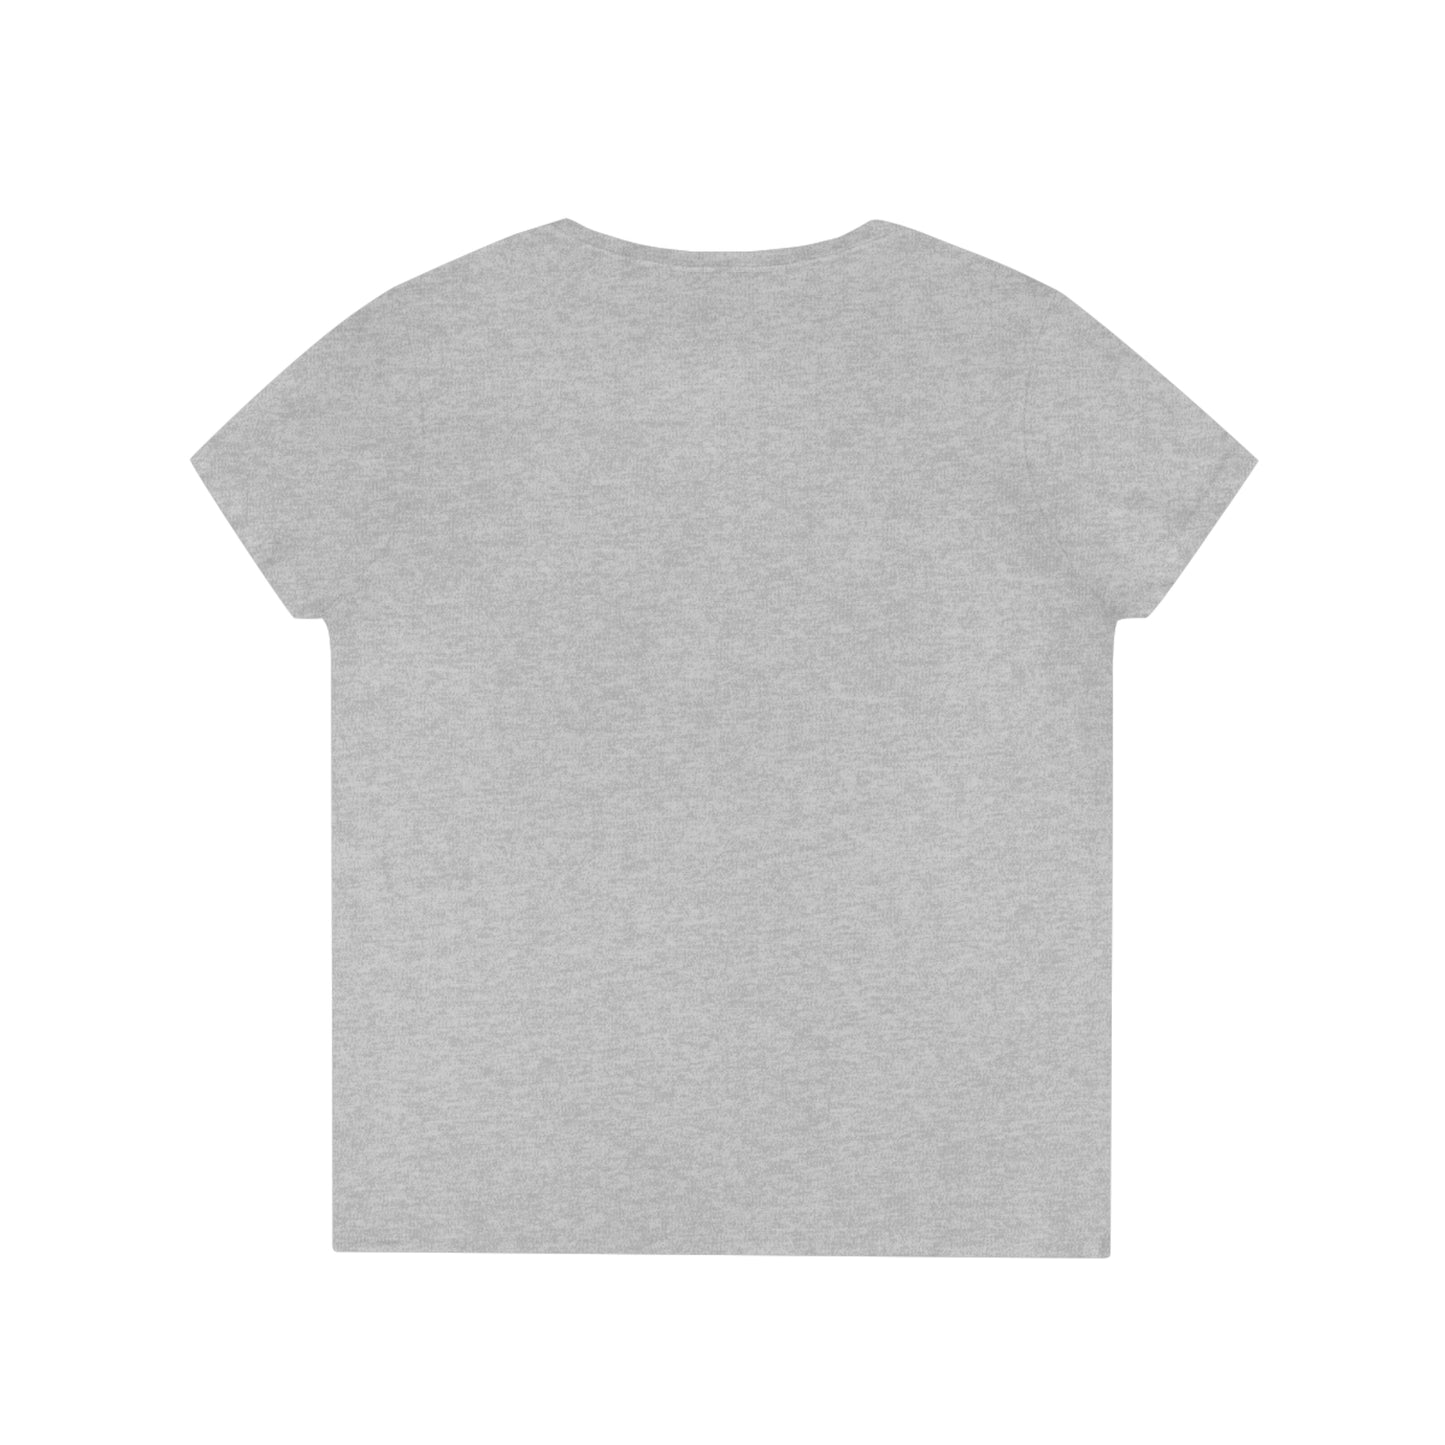 Amir Lavie - Women V-Neck T-Shirt